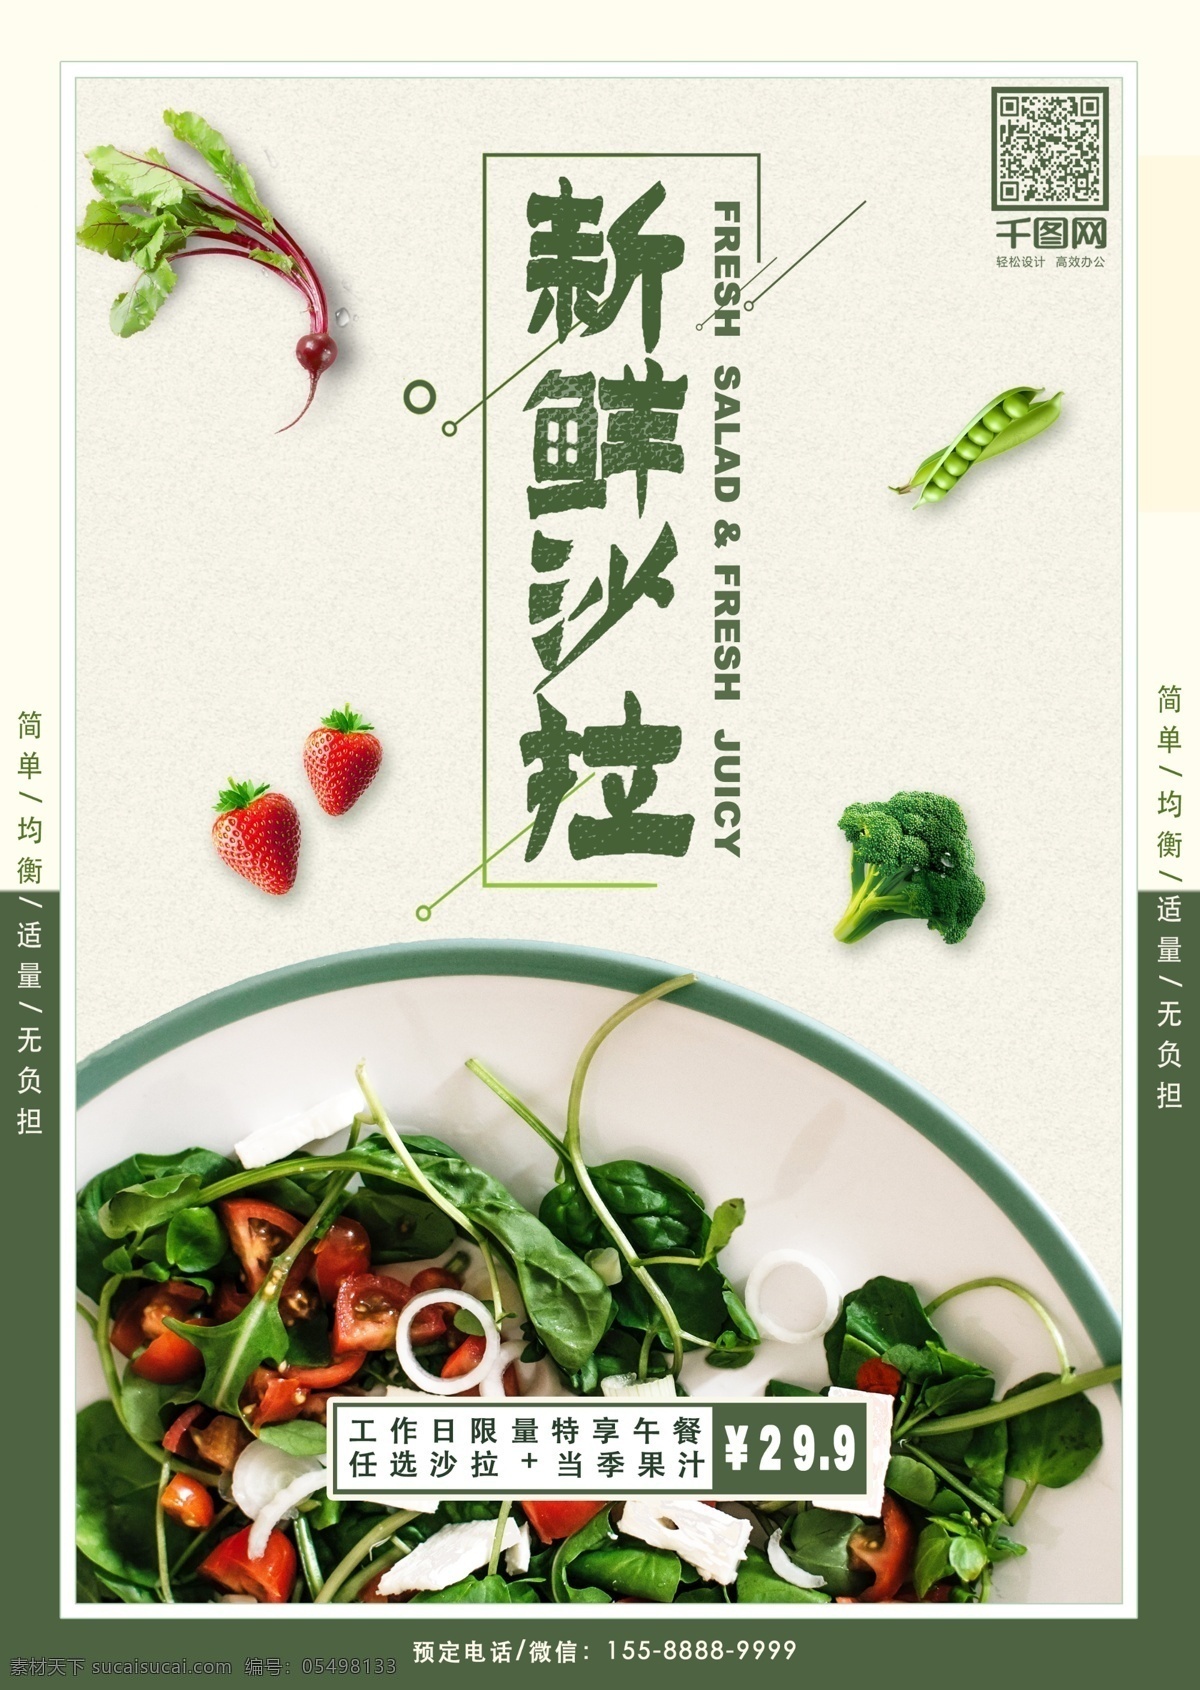 新鲜 沙拉 餐饮美食 宣传单 海报 促销 餐饮 美食 清新 绿色 优惠 西餐 健康 轻食